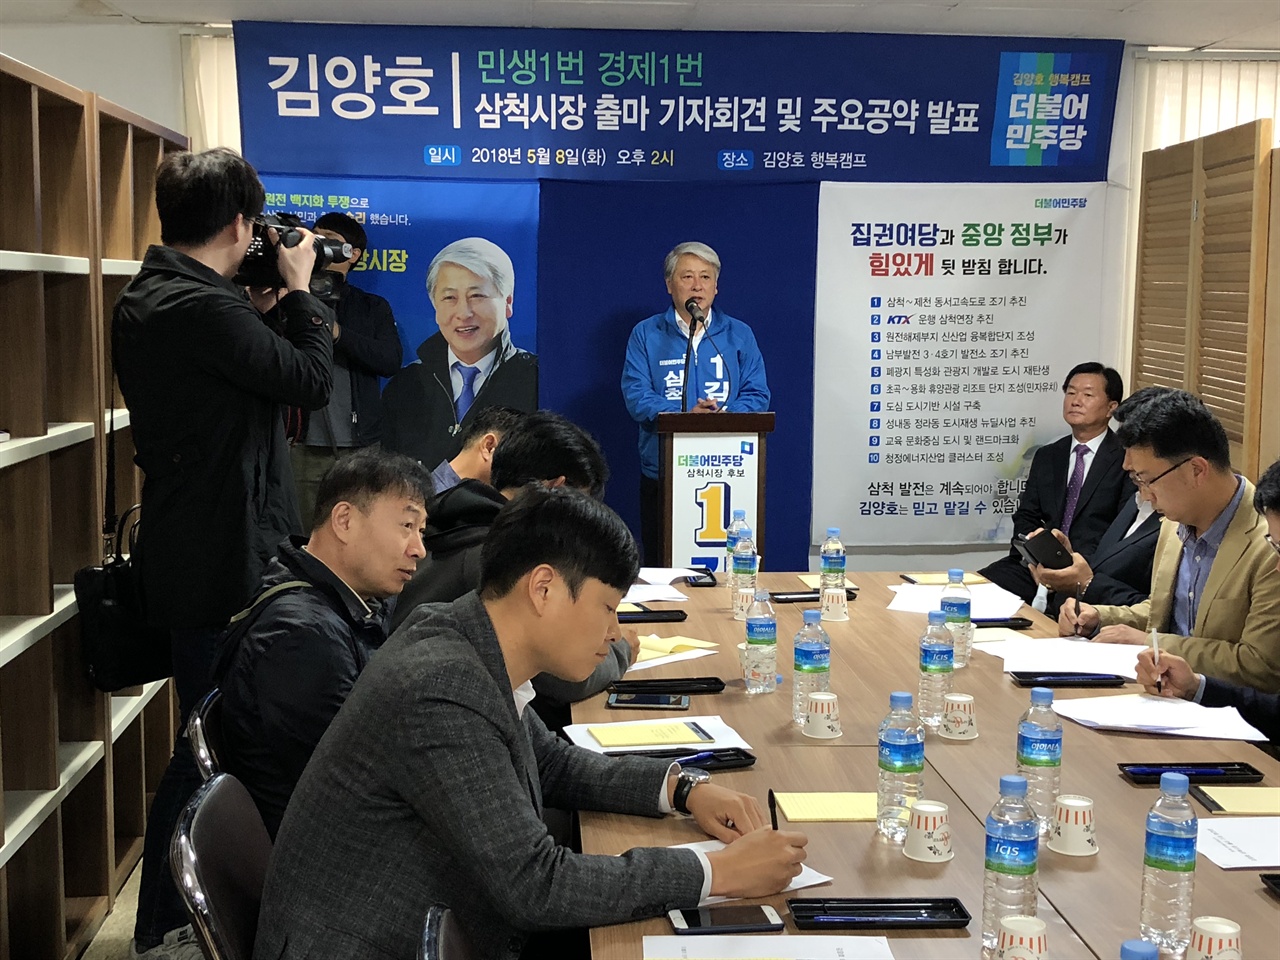 더불어민주당 삼척시장 김양호 후보가 재선 도전에 나서 선거공약 등 기자회견을 하고 있다.